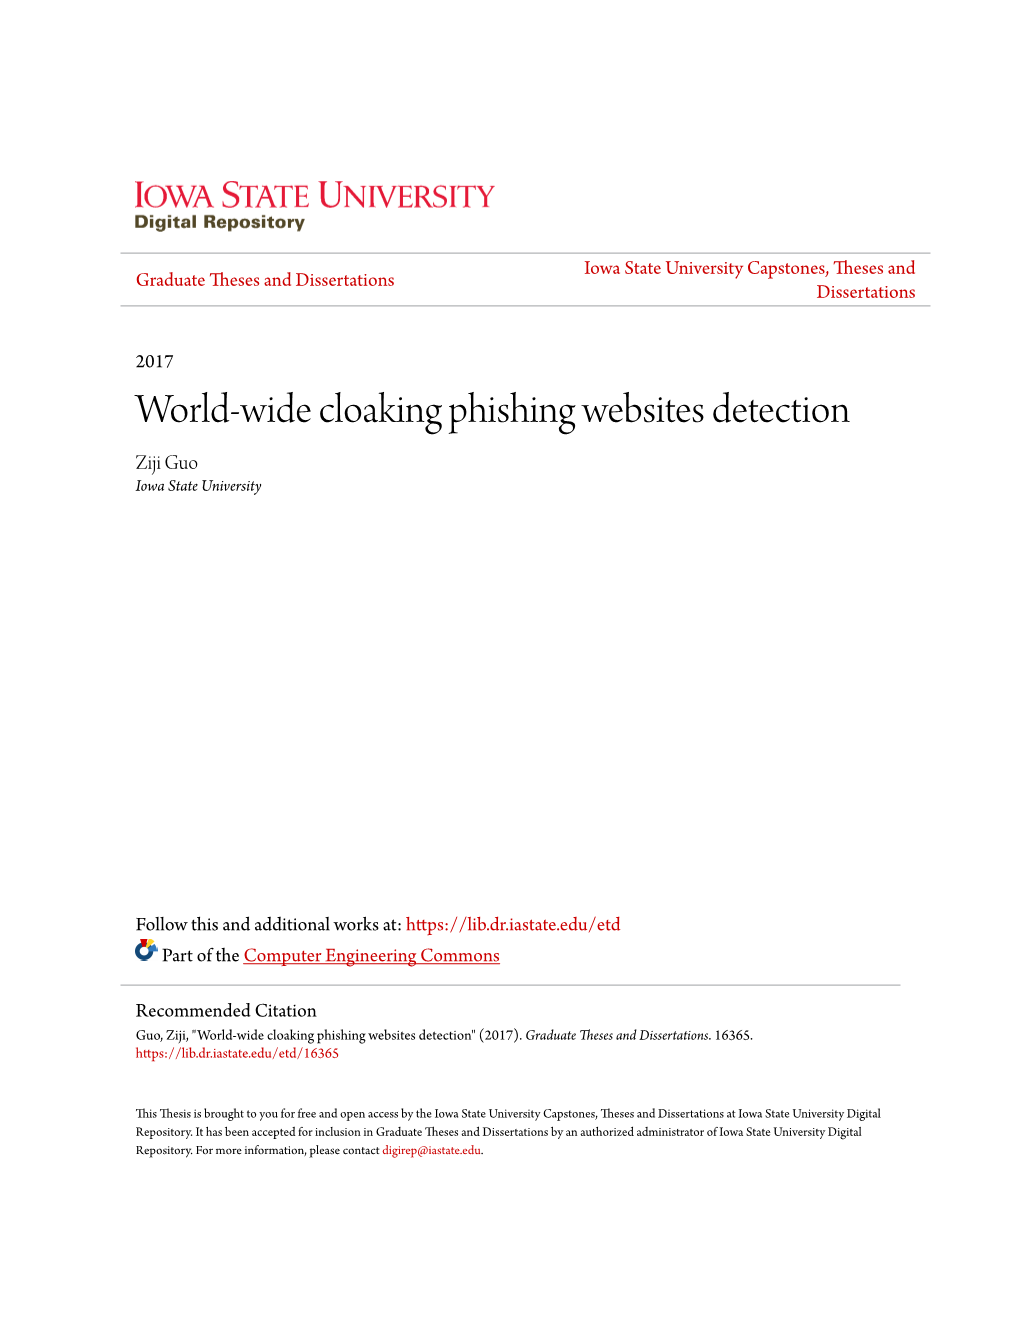 World-Wide Cloaking Phishing Websites Detection Ziji Guo Iowa State University